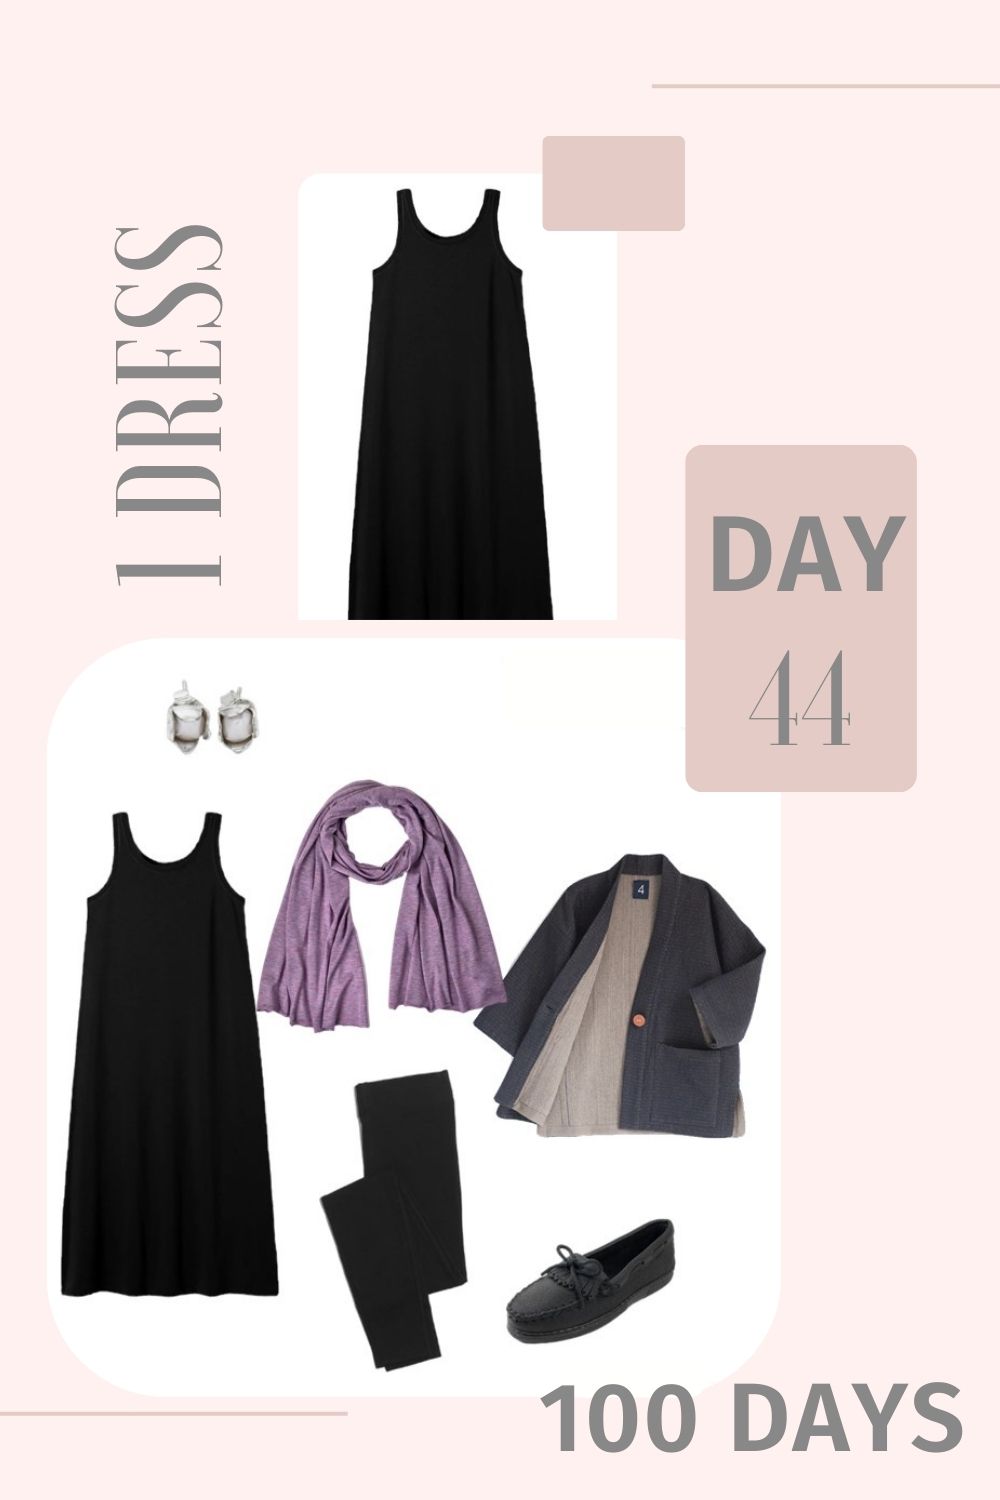 1 Dress 100 Days - Day 44